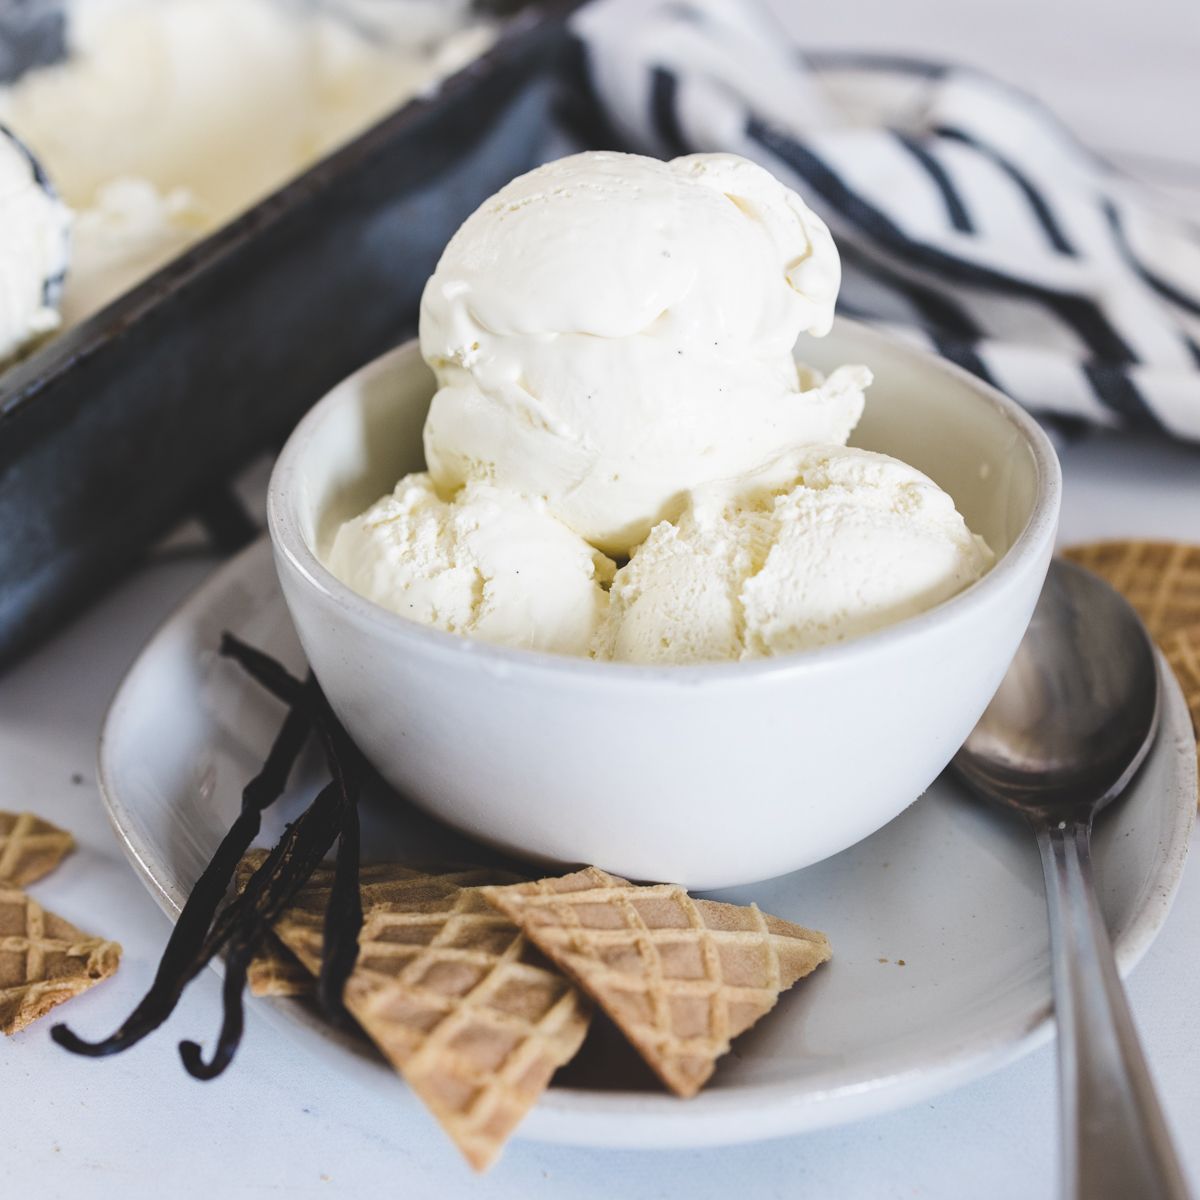 https://www.devourdinner.com/wp-content/uploads/2021/07/Devour-Dinner_Vanilla-Bean-Ice-Cream-202.jpg